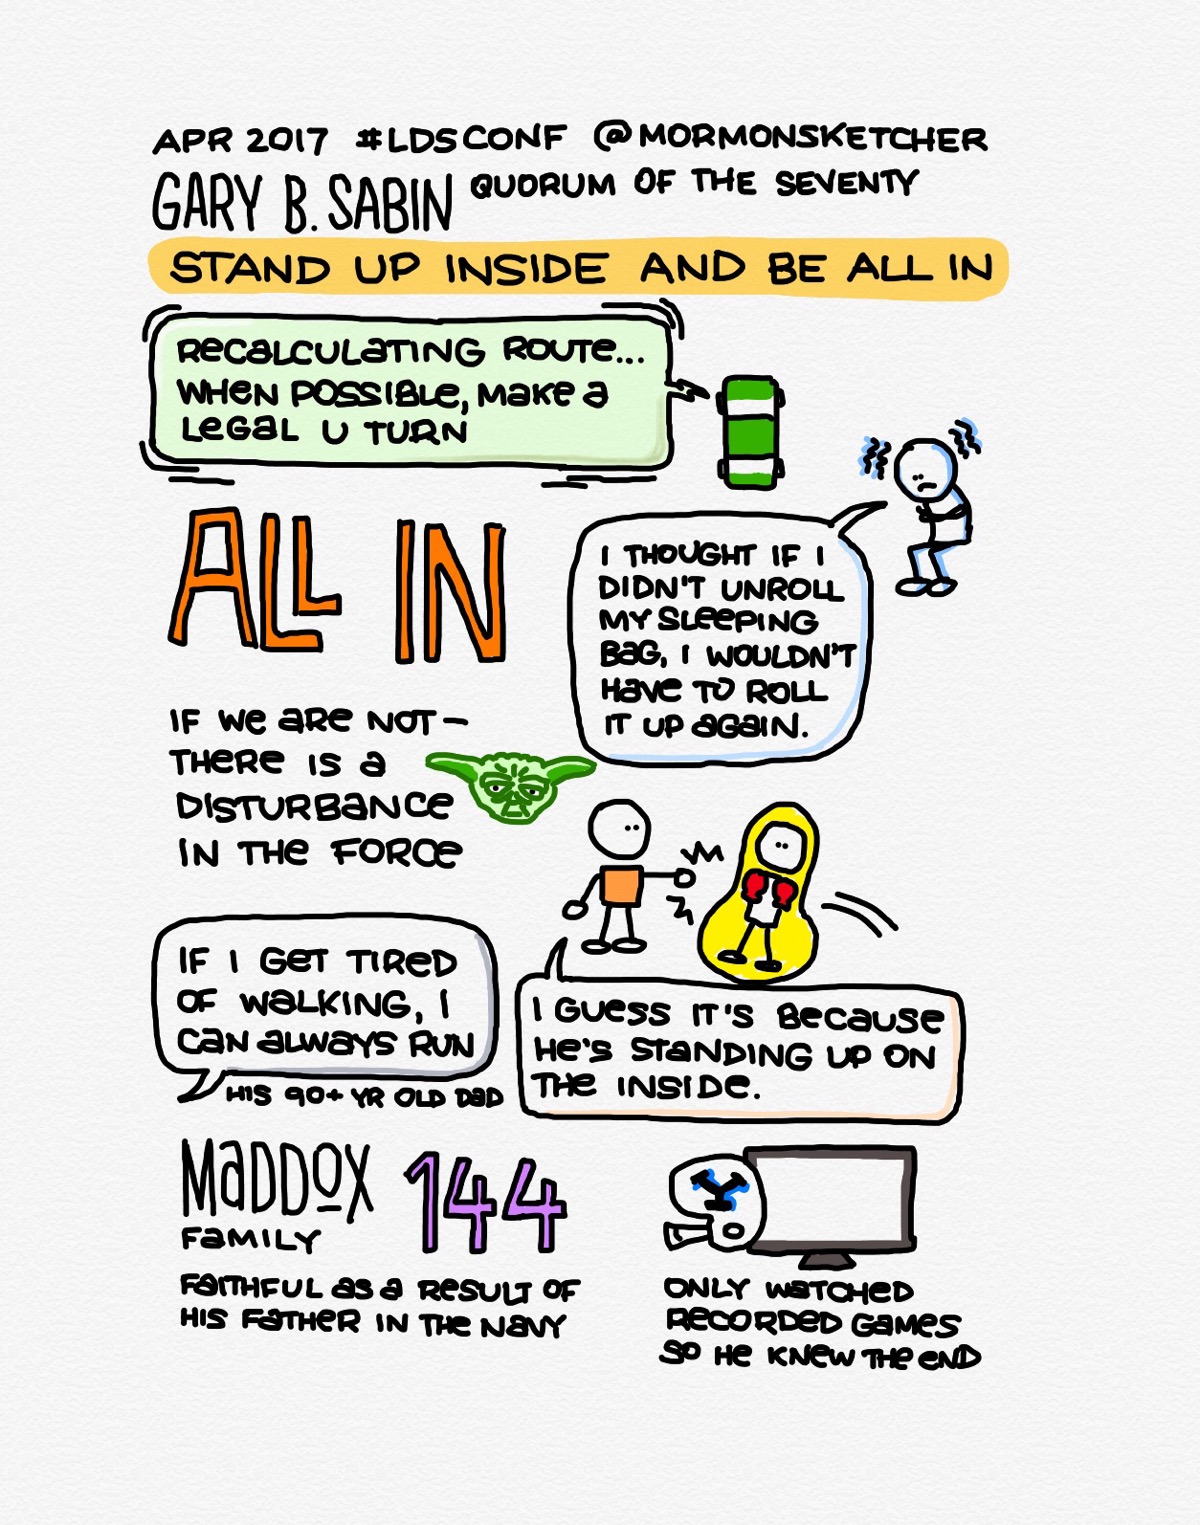 Gary B Sabin Conference Sketchnotes